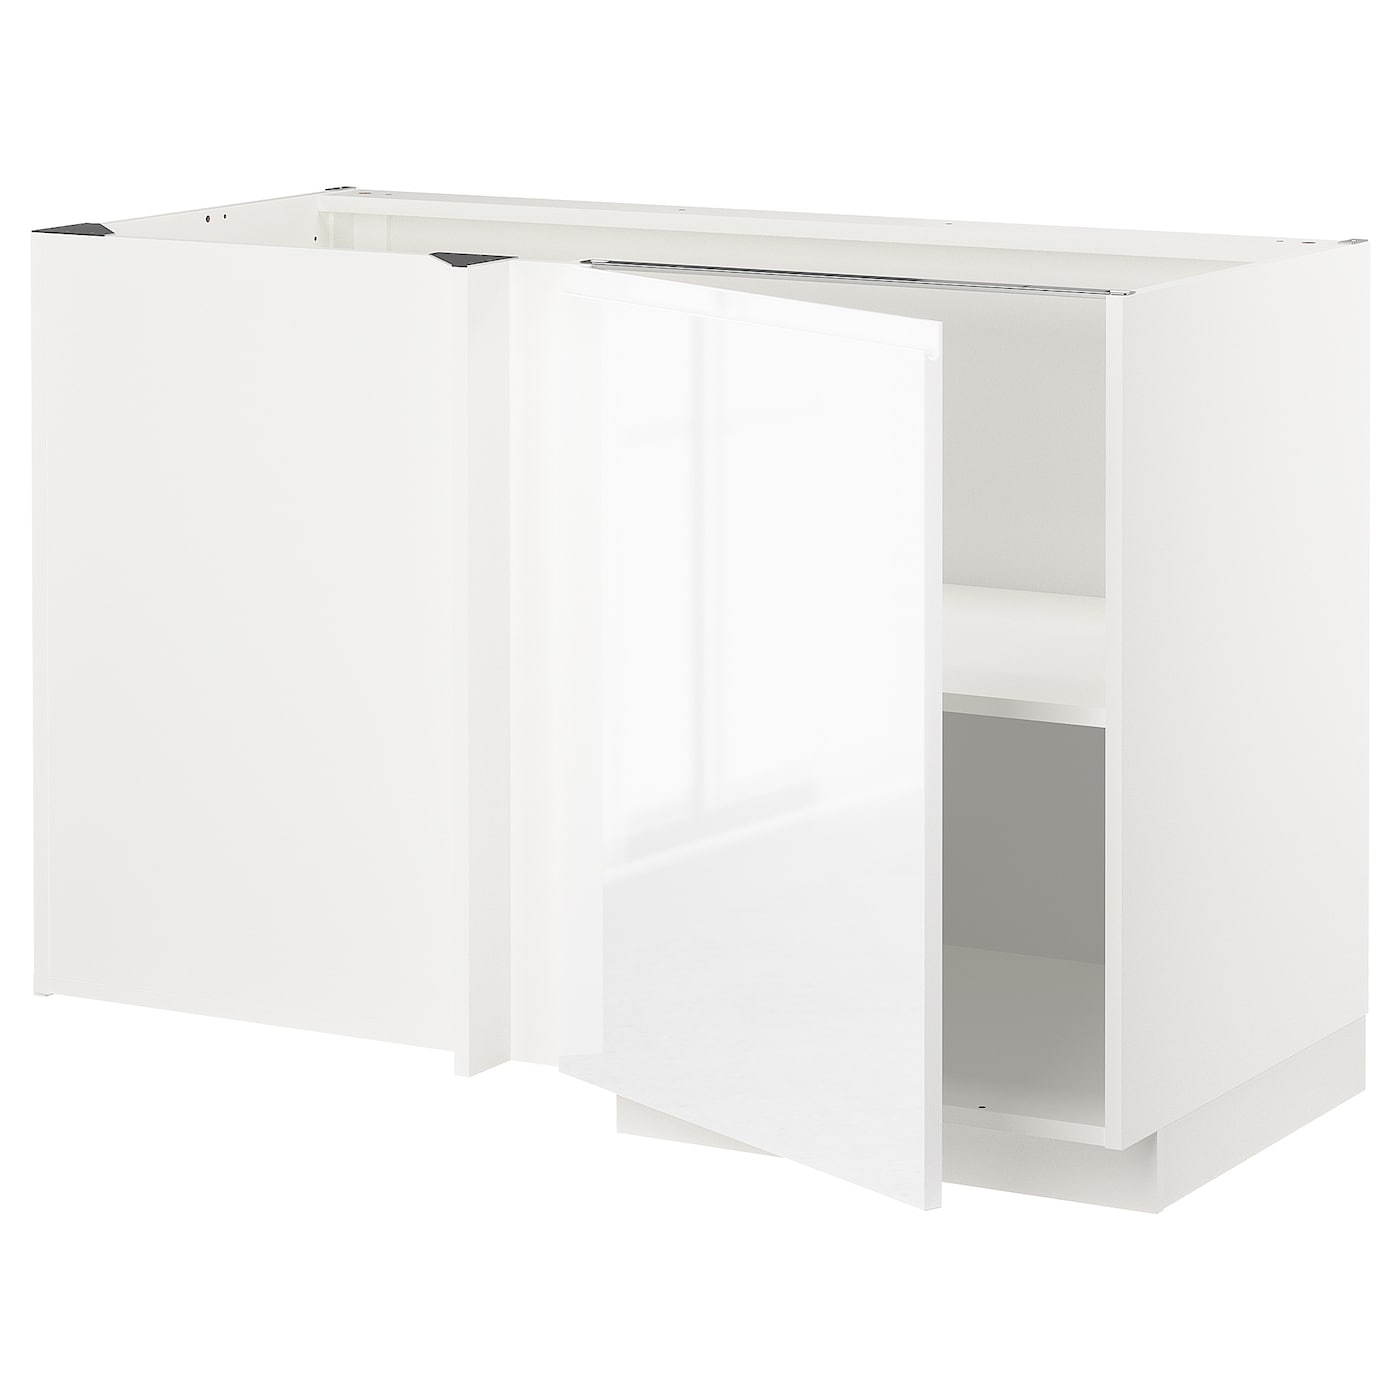 Напольный шкаф - IKEA METOD, 88x67,5x127,5см, белый, МЕТОД ИКЕА